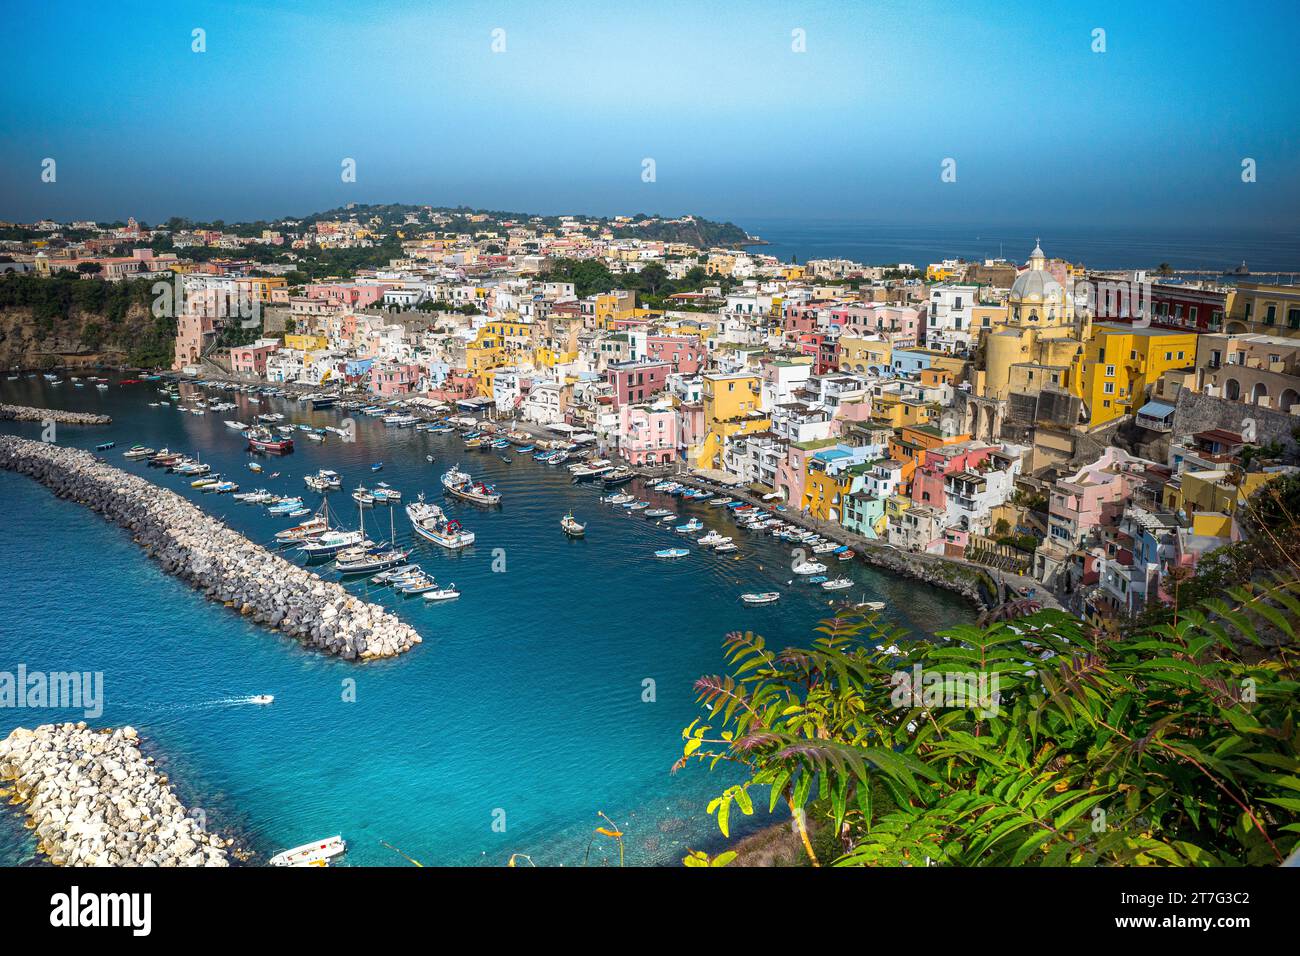 Procida è una bellissima isola italiana nel Golfo di Napoli fiancheggiata da splendide case dai colori vivaci Foto Stock